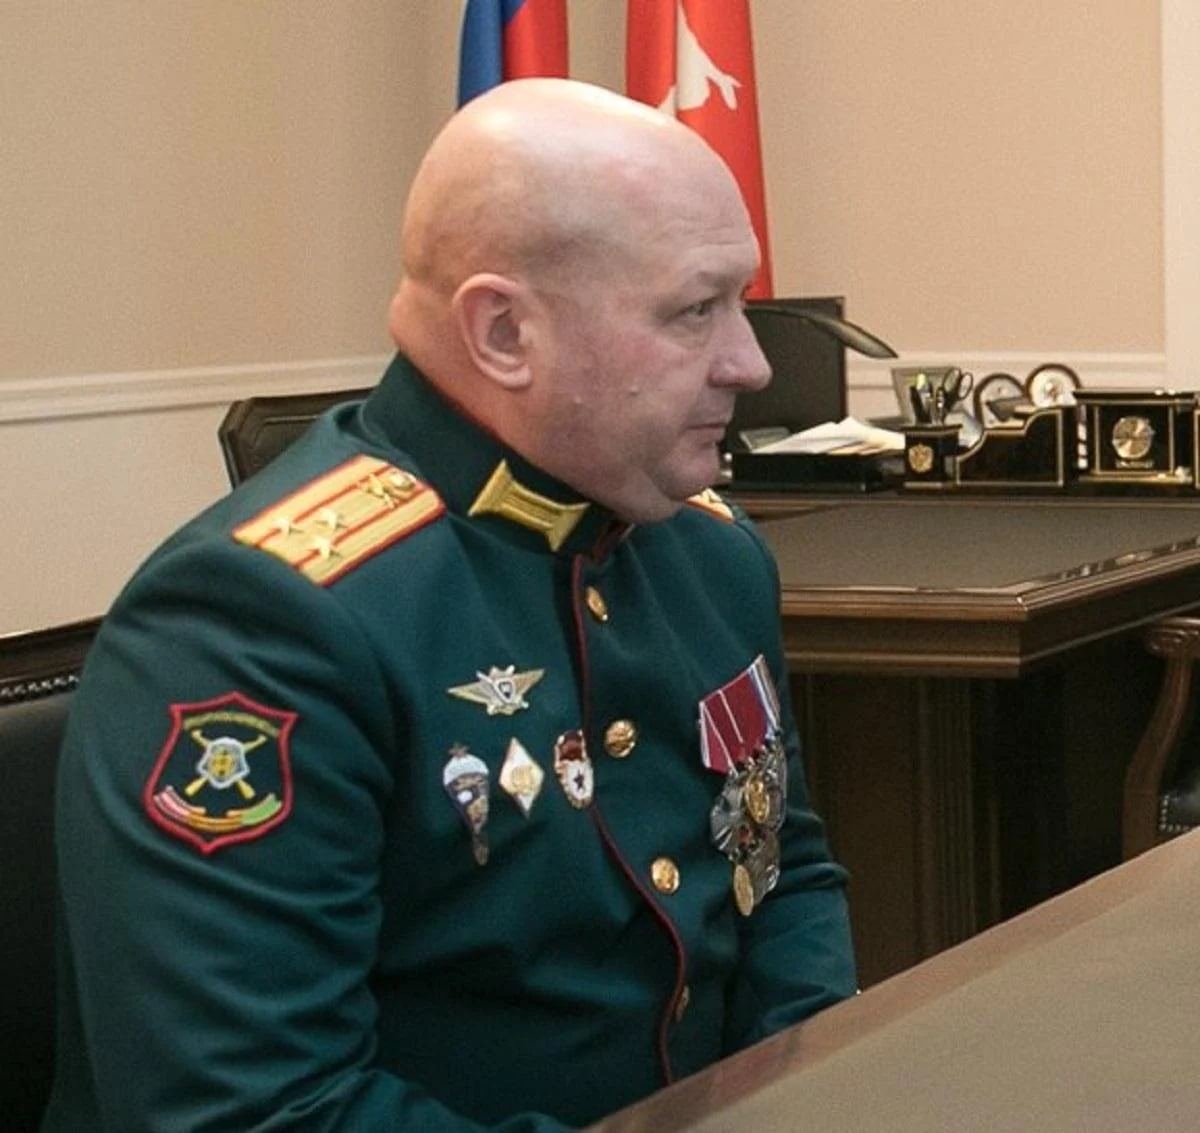 Идентифицирован командир, управляющий подразделением РФ